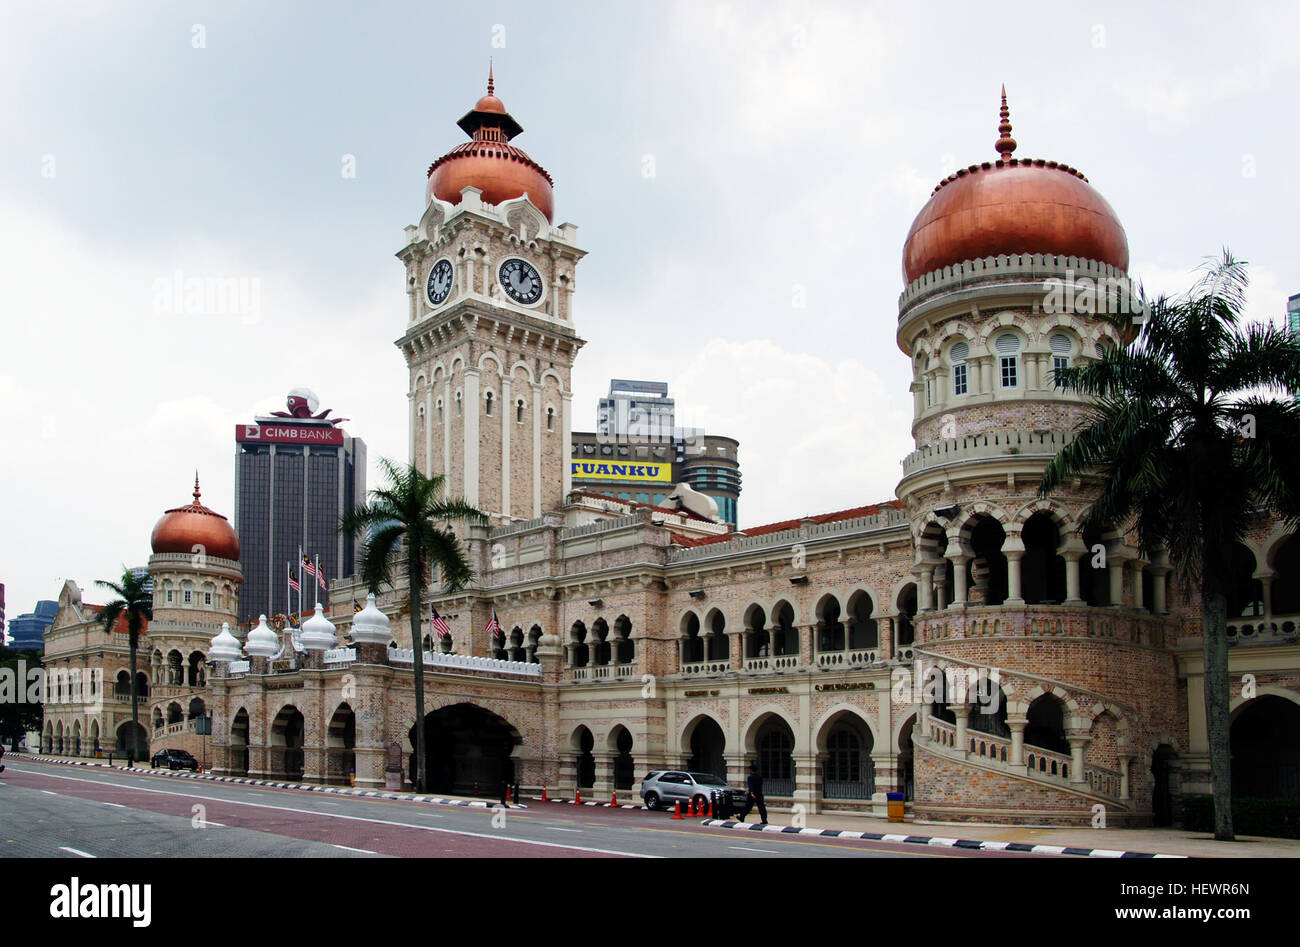 El edificio Sultán Abdul Samad entre Kuala Lumpur los primeros edificios de estilo morisco. Se establece en el medio de la plaza Merdeka (Dataran Merdeka) y el Royal Selangor Club, enfrente de Jalan Sultan Hishamuddin. Fue construido en 1897 y fue nombrado después de que el campeón reinante del sultán de Selangor en el momento. El distinguido originalmente sirvió de secretaría para la administración colonial británica. Diseñado por AC Norman, el arquitecto responsable de la Masjid Jamek (Mezquita Jamek), el históricamente significativo edificio utilizado para albergar a los tribunales superiores de Malasia: el Tribunal Federal de Malayo Foto de stock